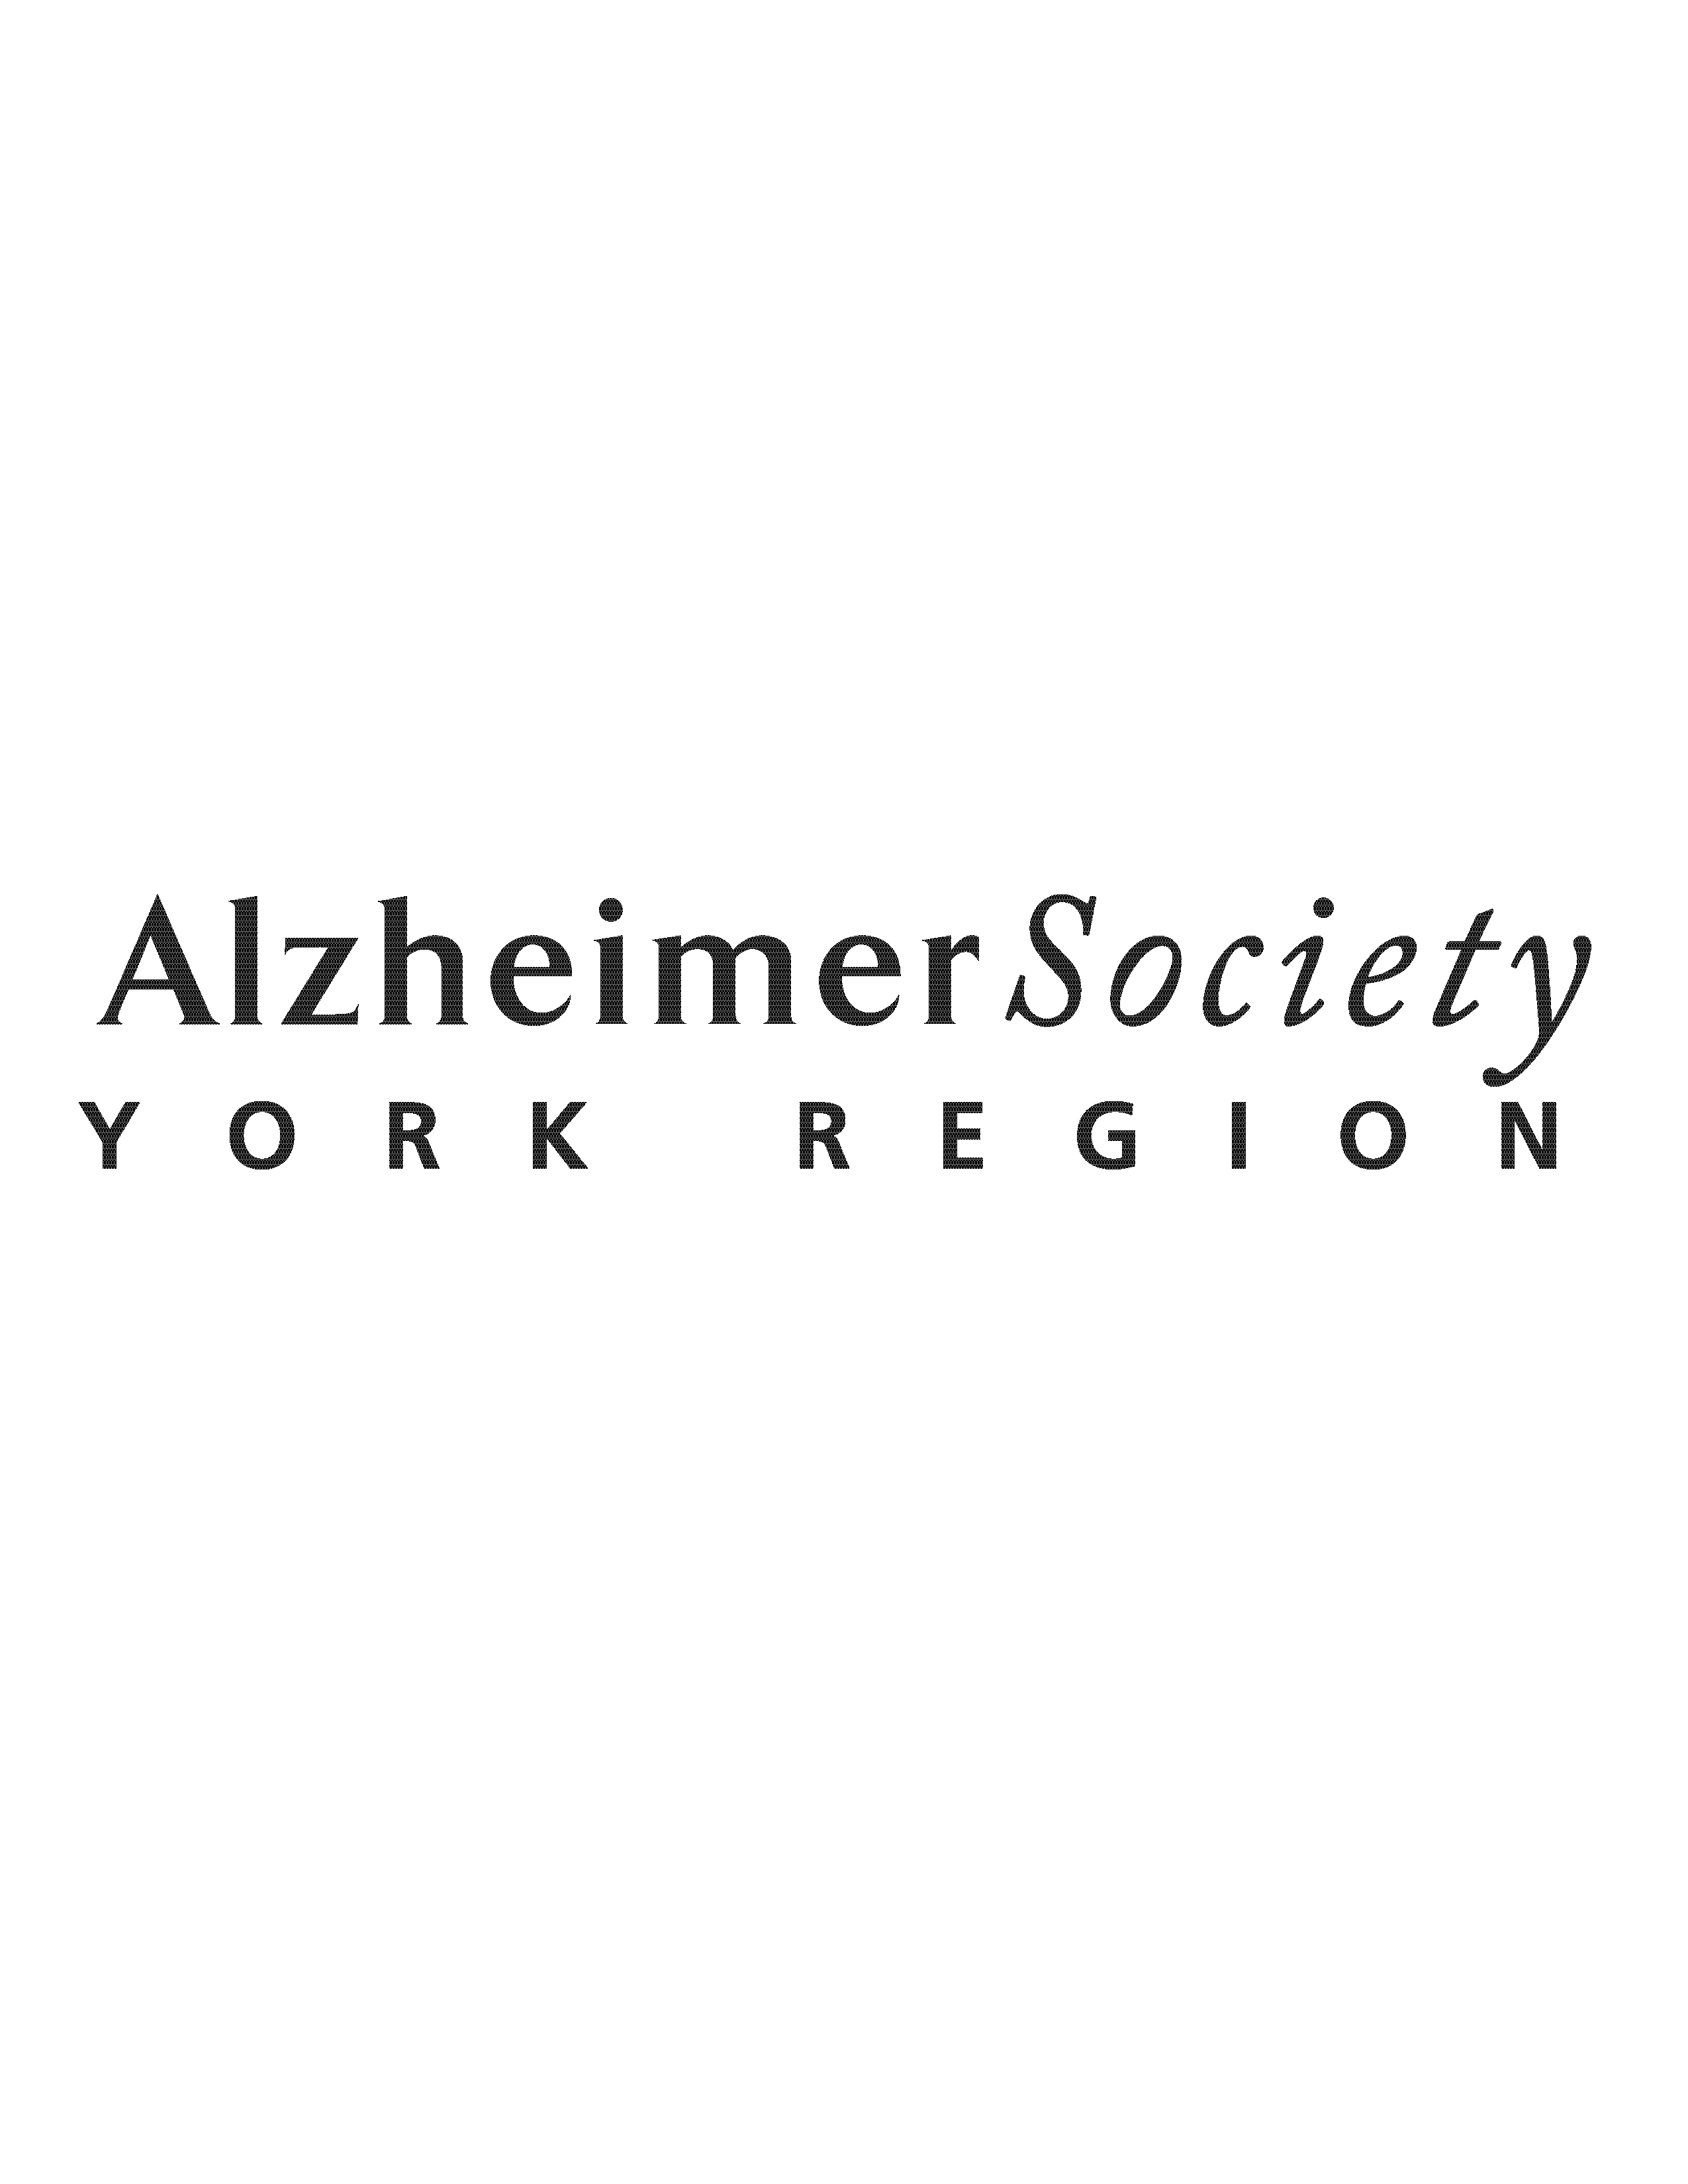 Alzheimer Society York Region